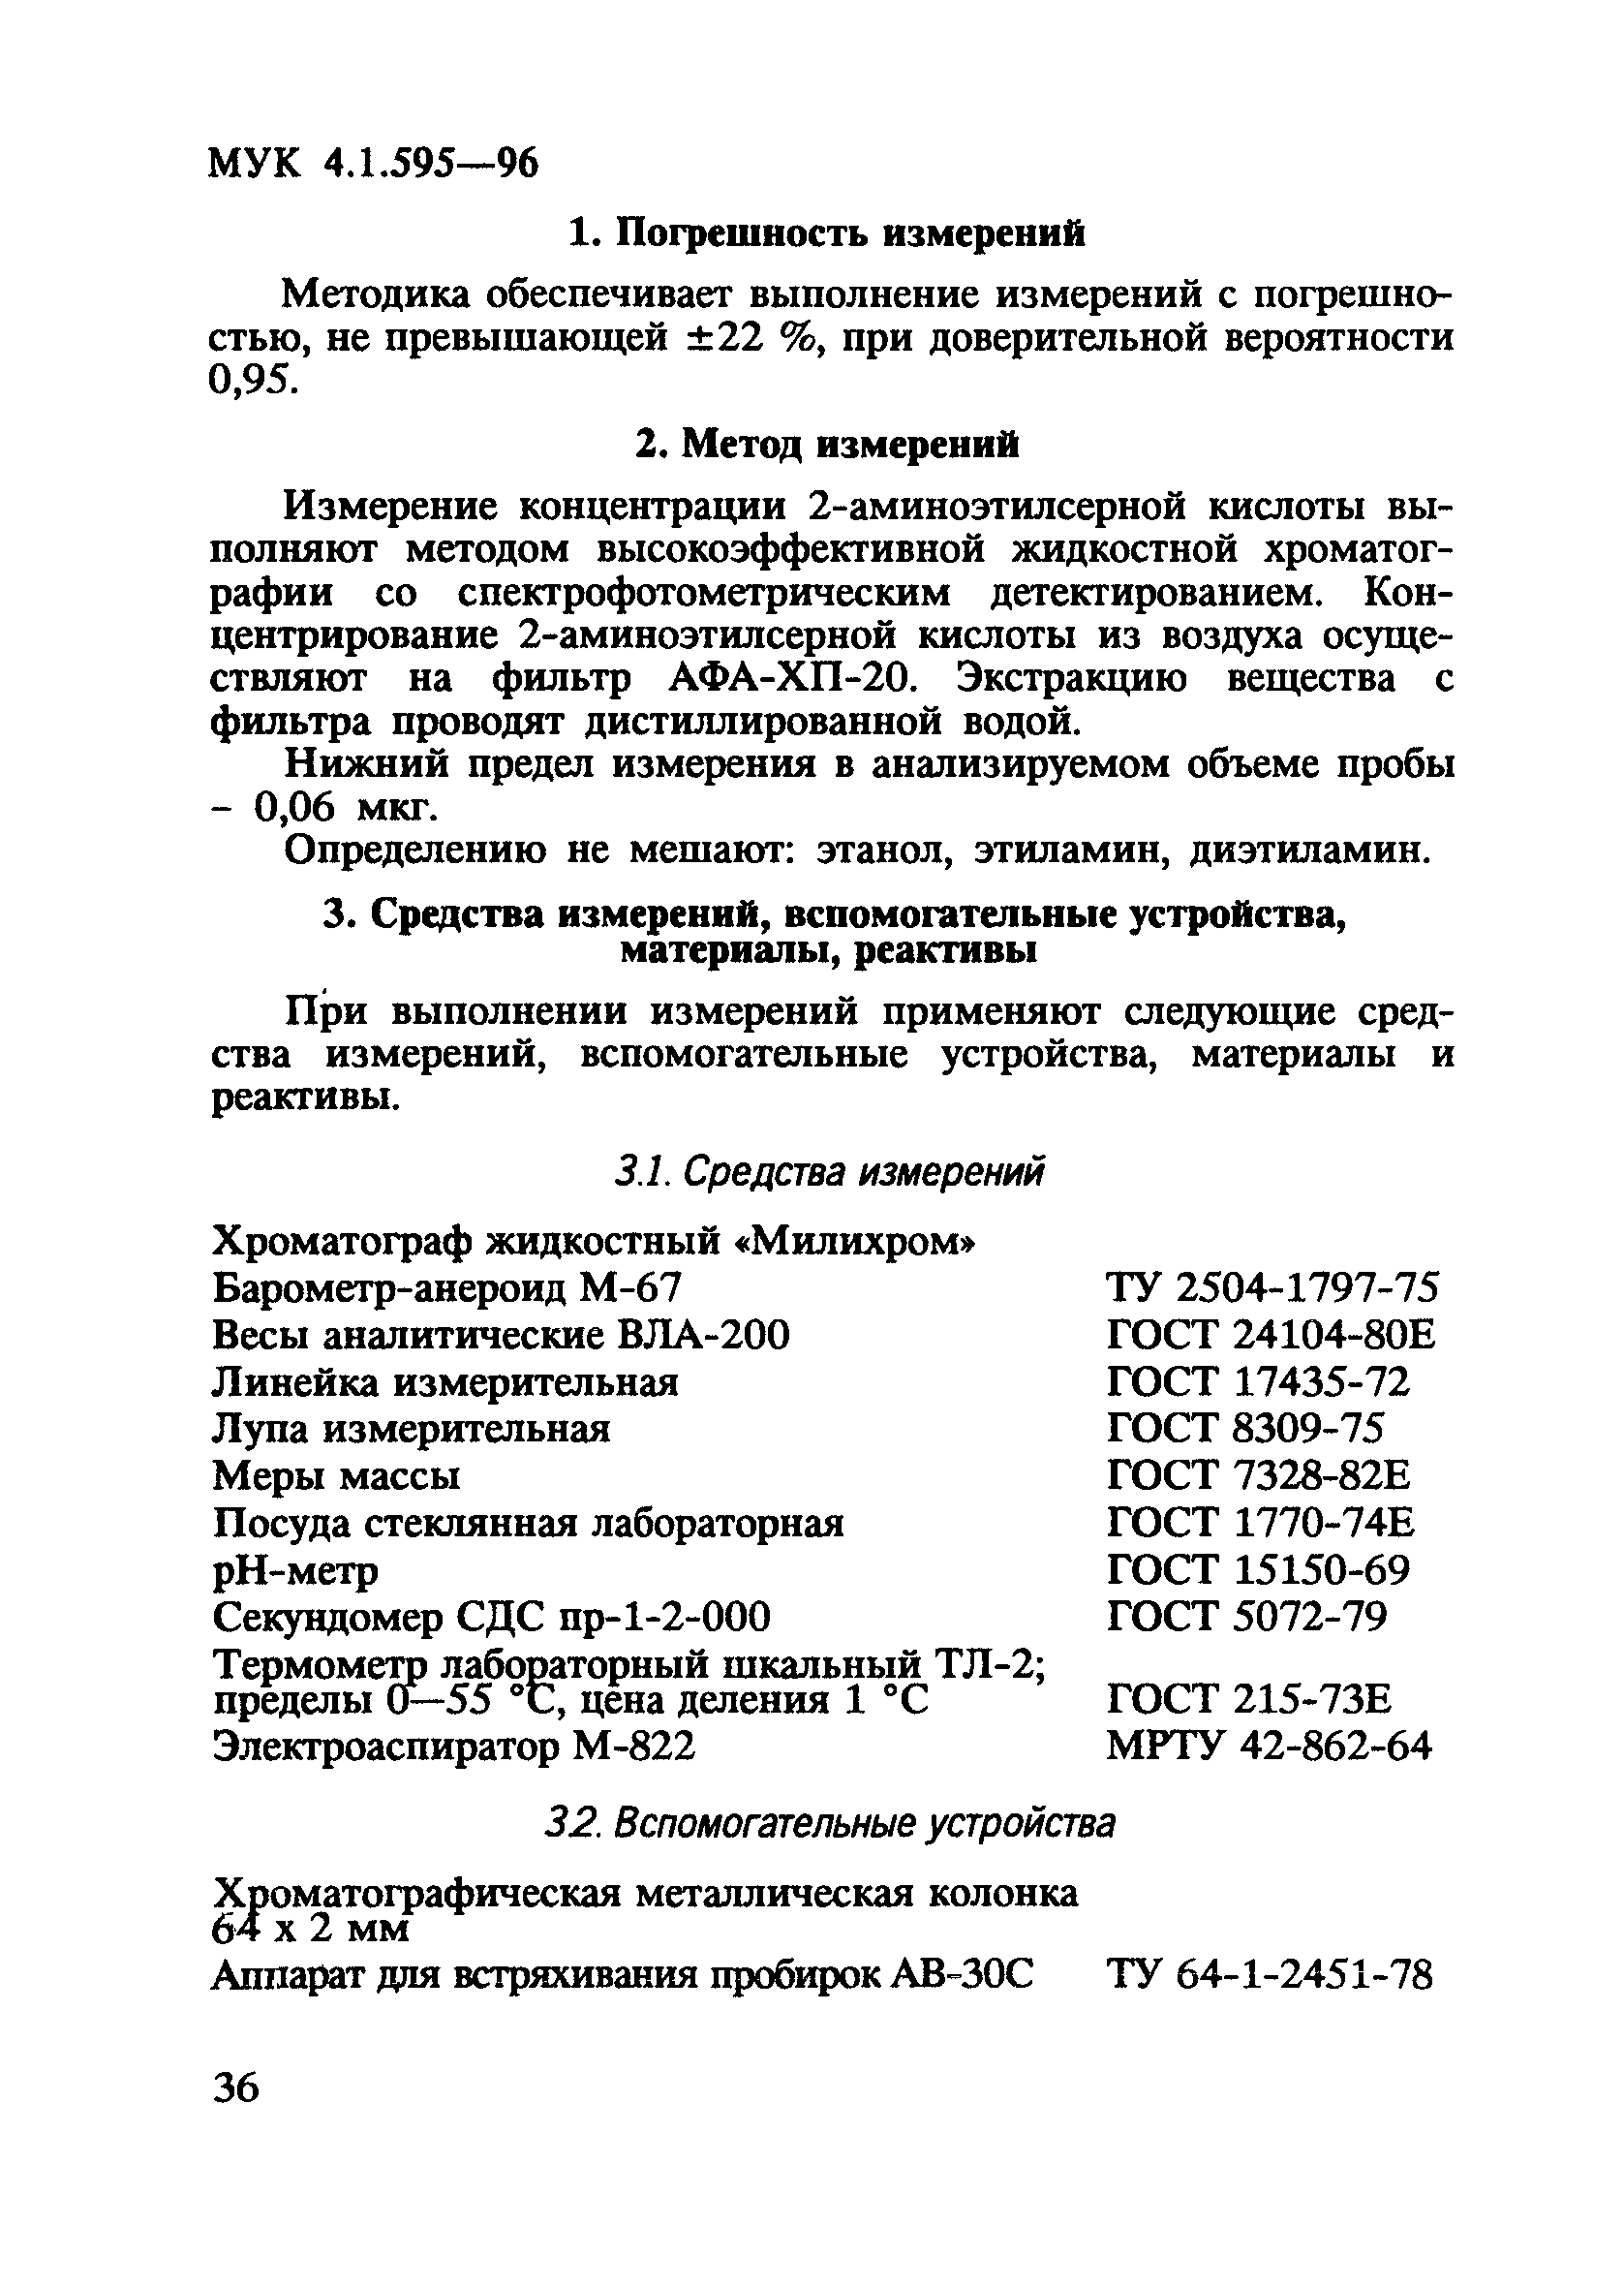 МУК 4.1.595-96